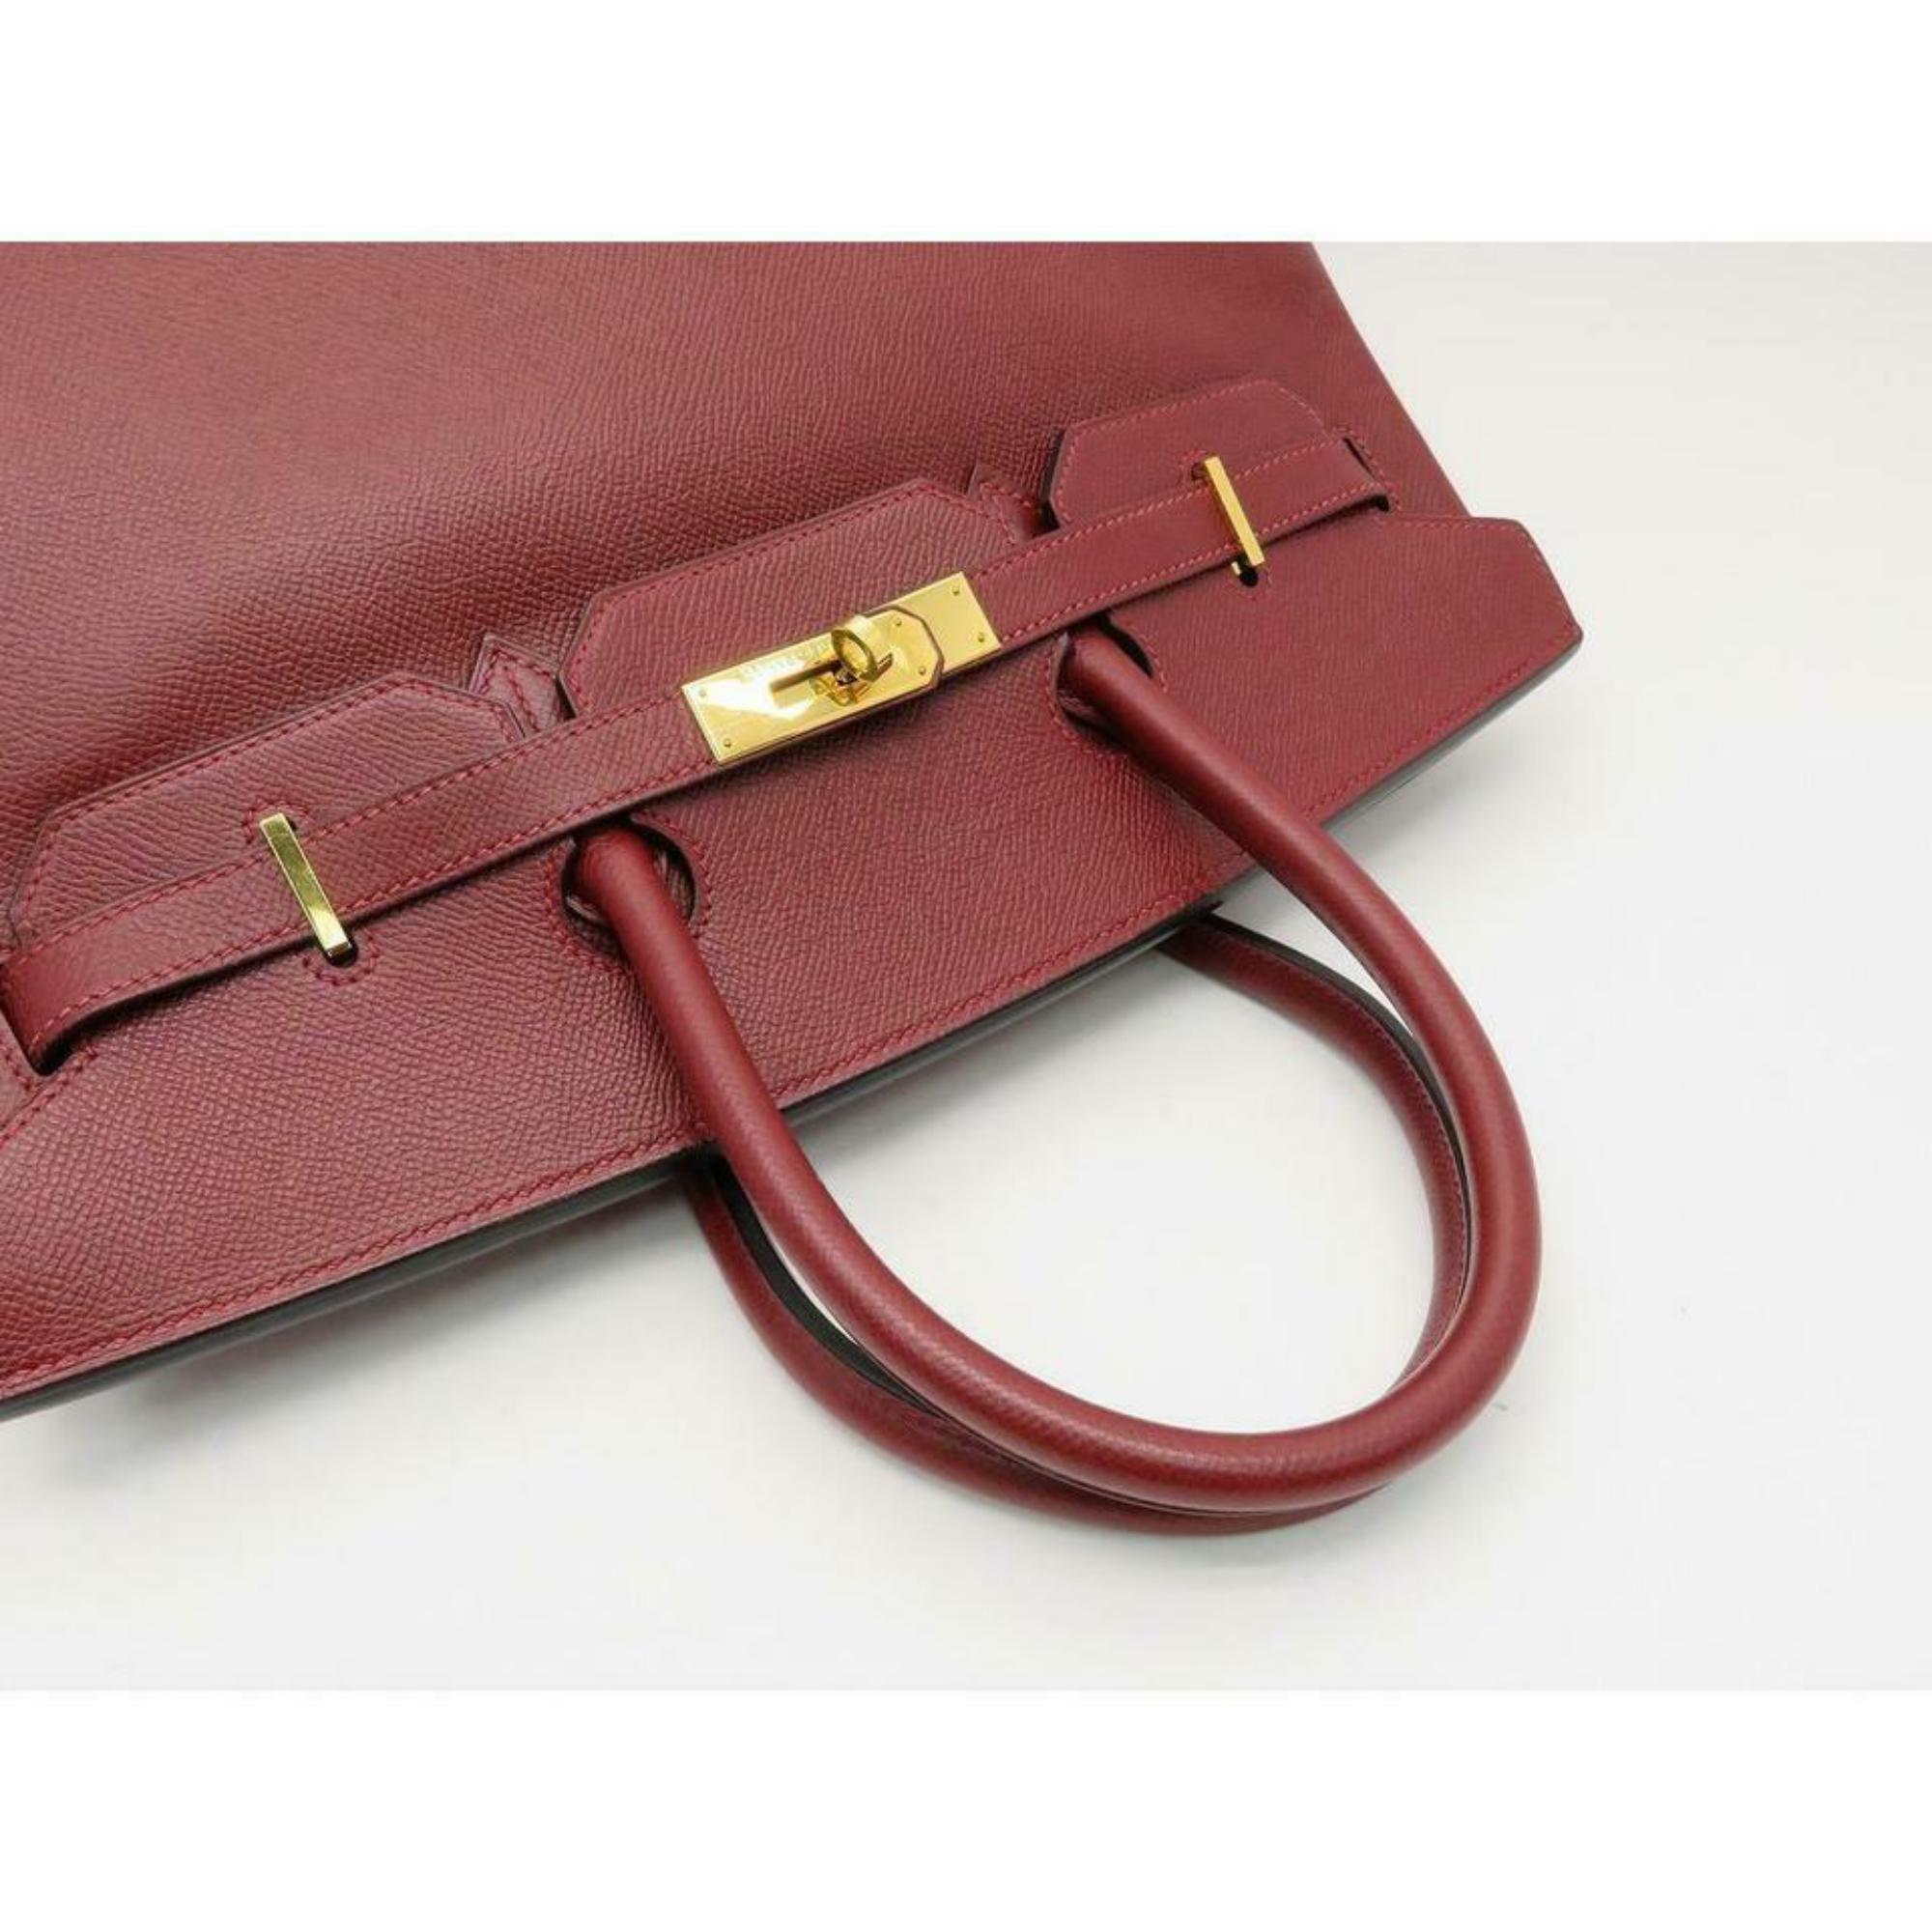 Hermès Birkin Dark Rouge Courchevel Rouge 35 870369 Red Leather Satchel For Sale 2